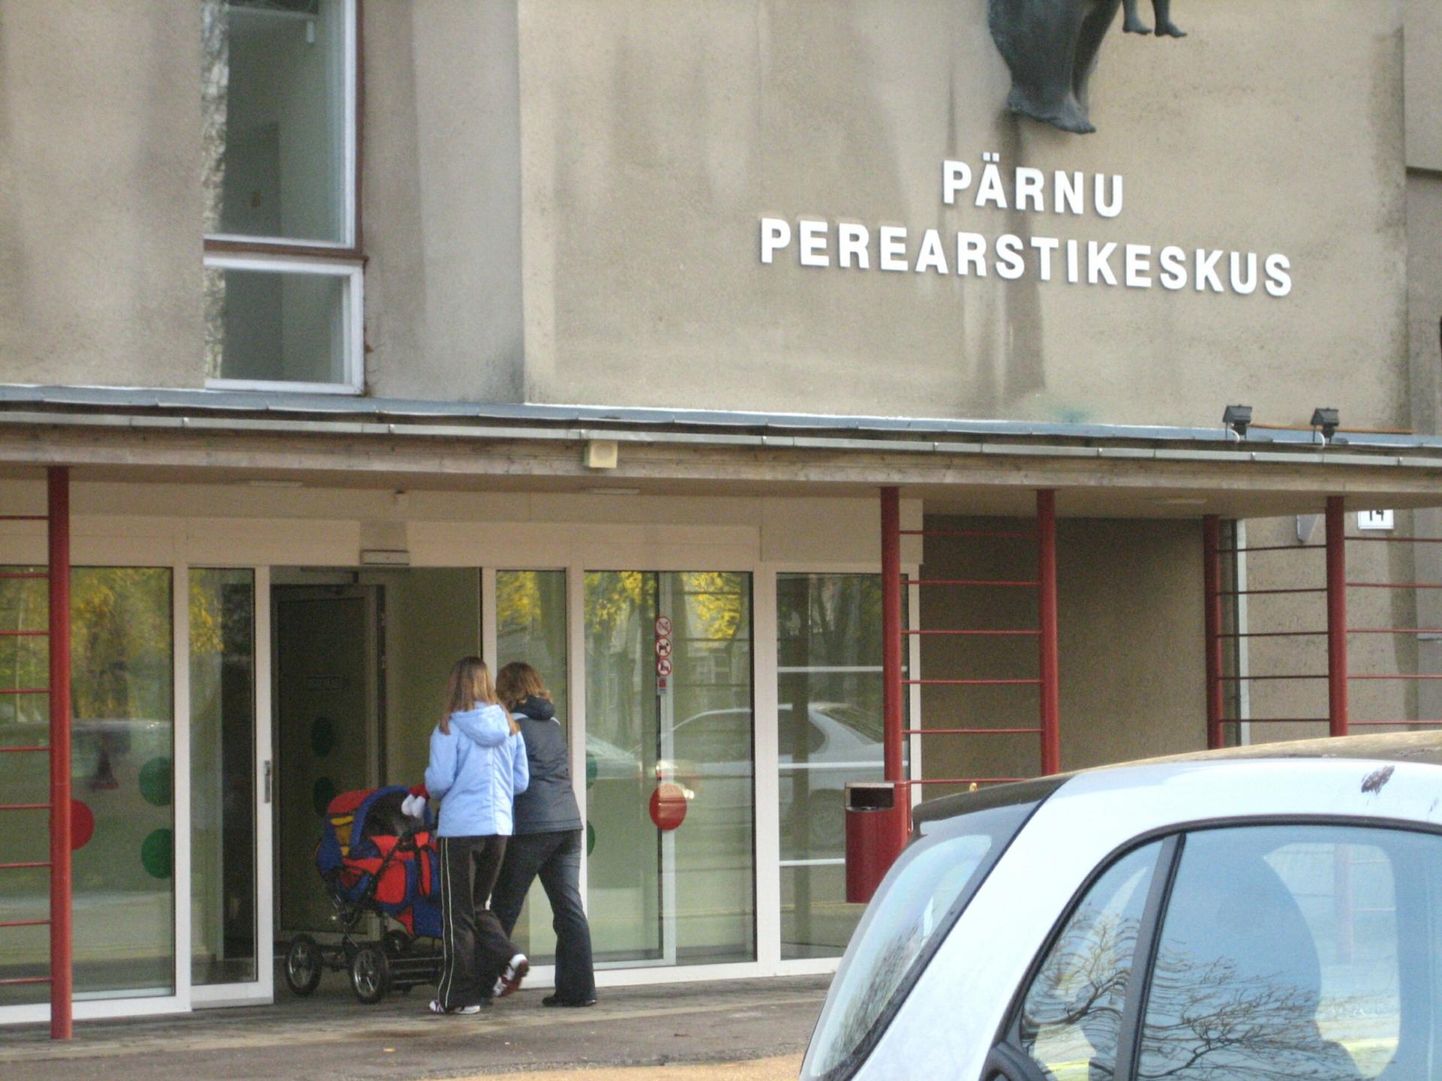 Kuigi praeguse hoone seinal ilutseb Pärnu perearstikeskuse nimi, on see tegelikult kesklinna tervise­keskus, kus töötavad töötervishoiuarstid, radioloogid, eraarstid ja ortopeedidki.